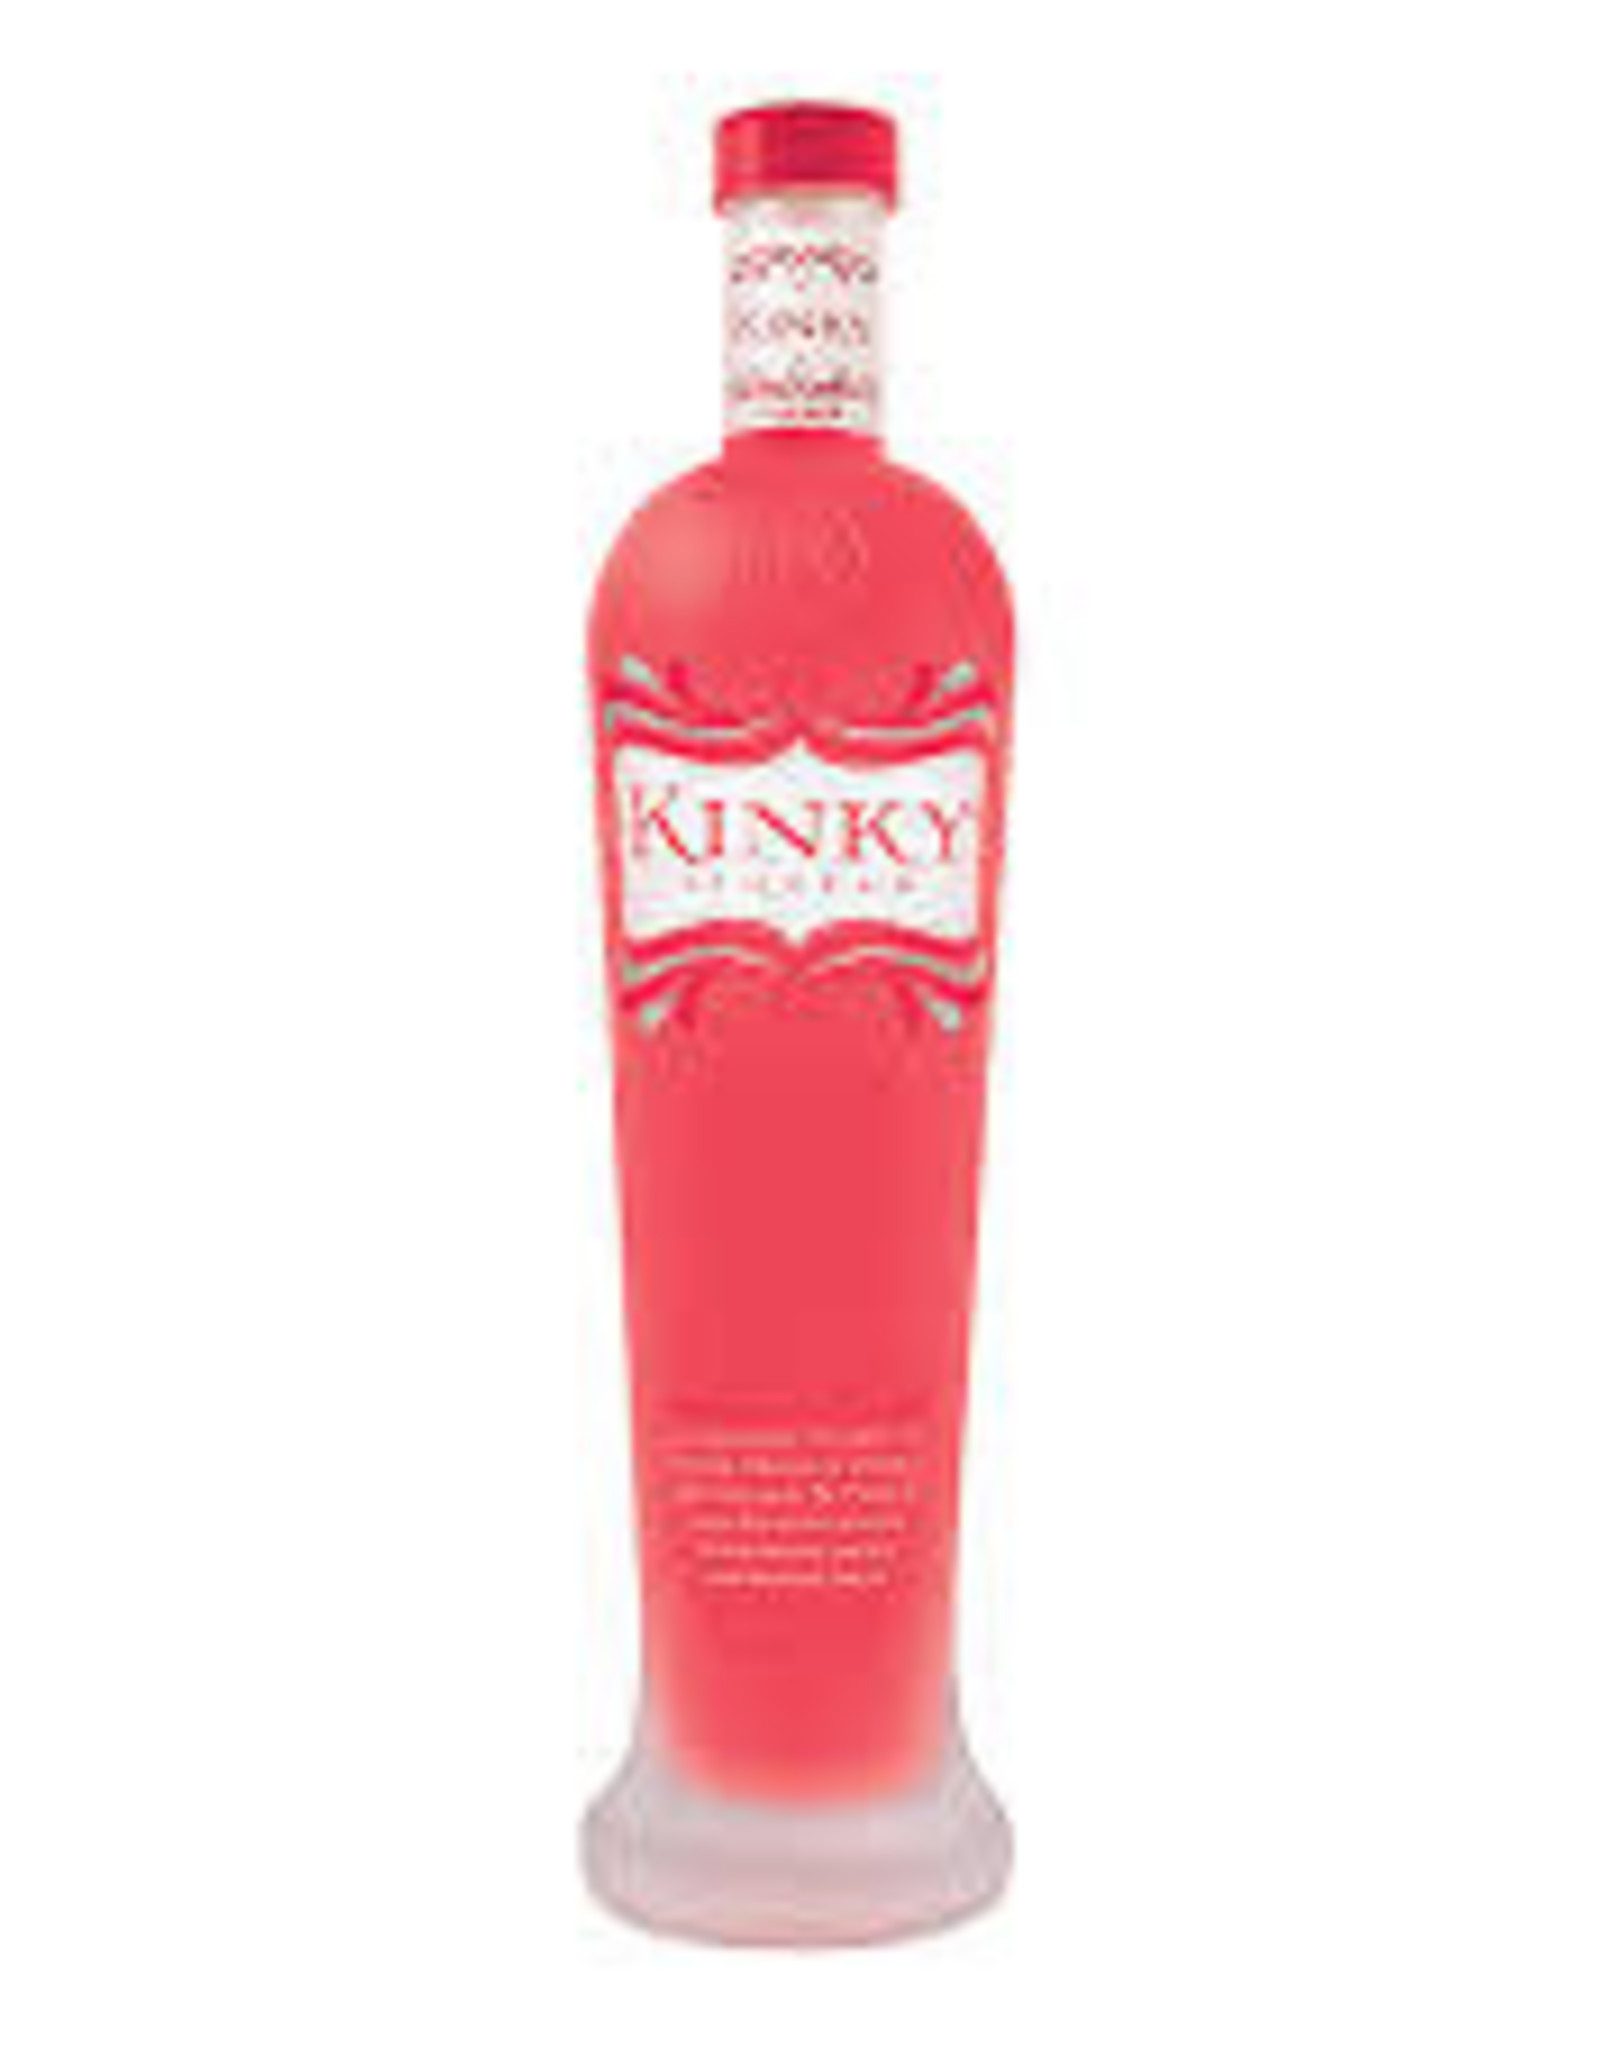 Kinky Kinky Pink